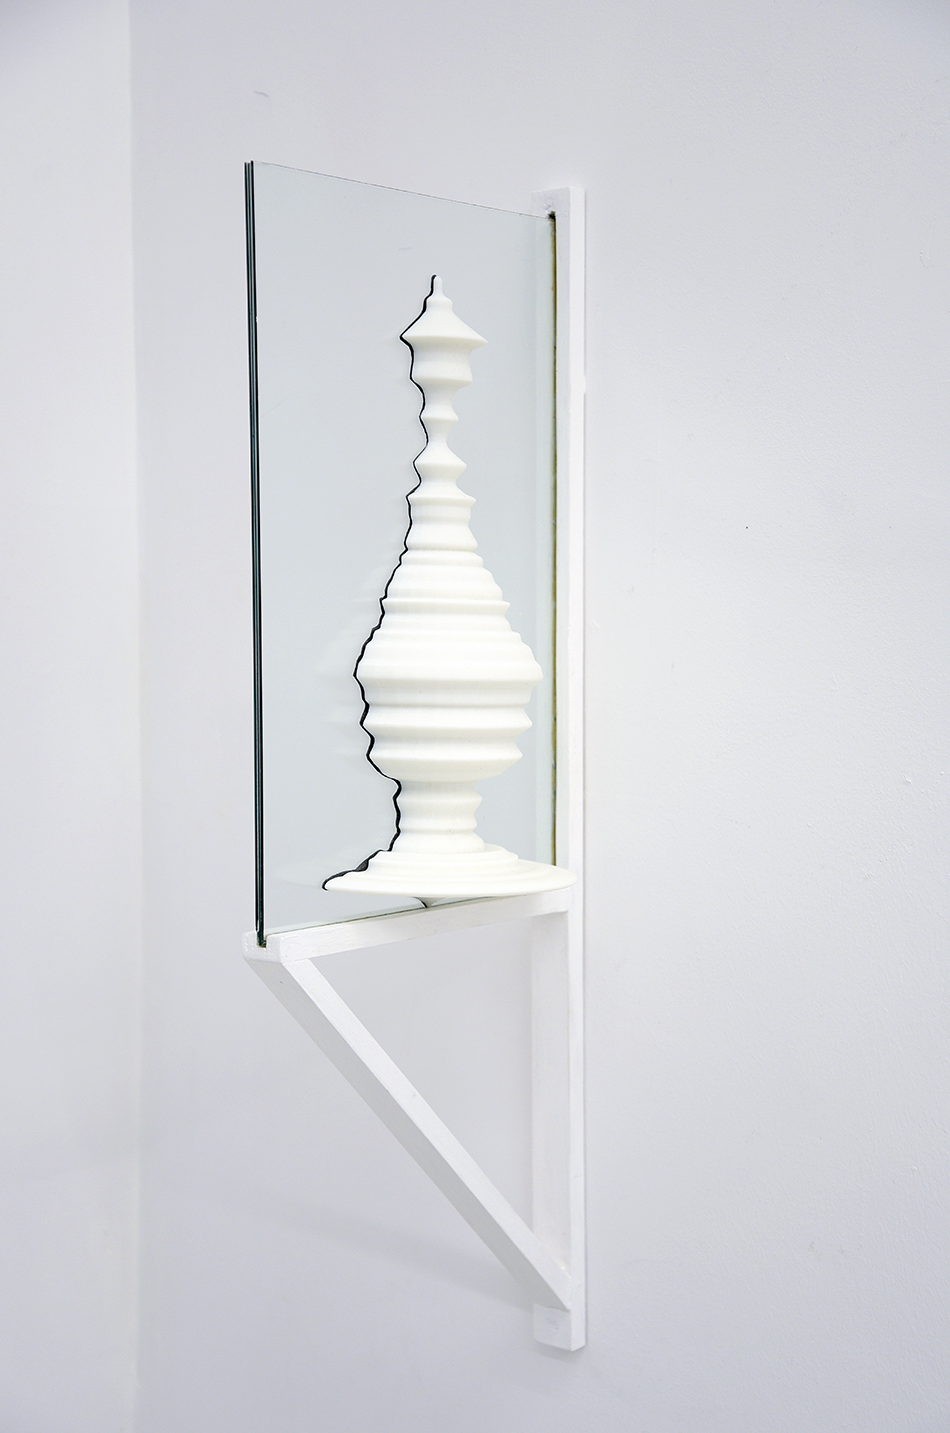 'La part inaliénable', impression 3D, verre, papier charbon, support en bois, 2018.
